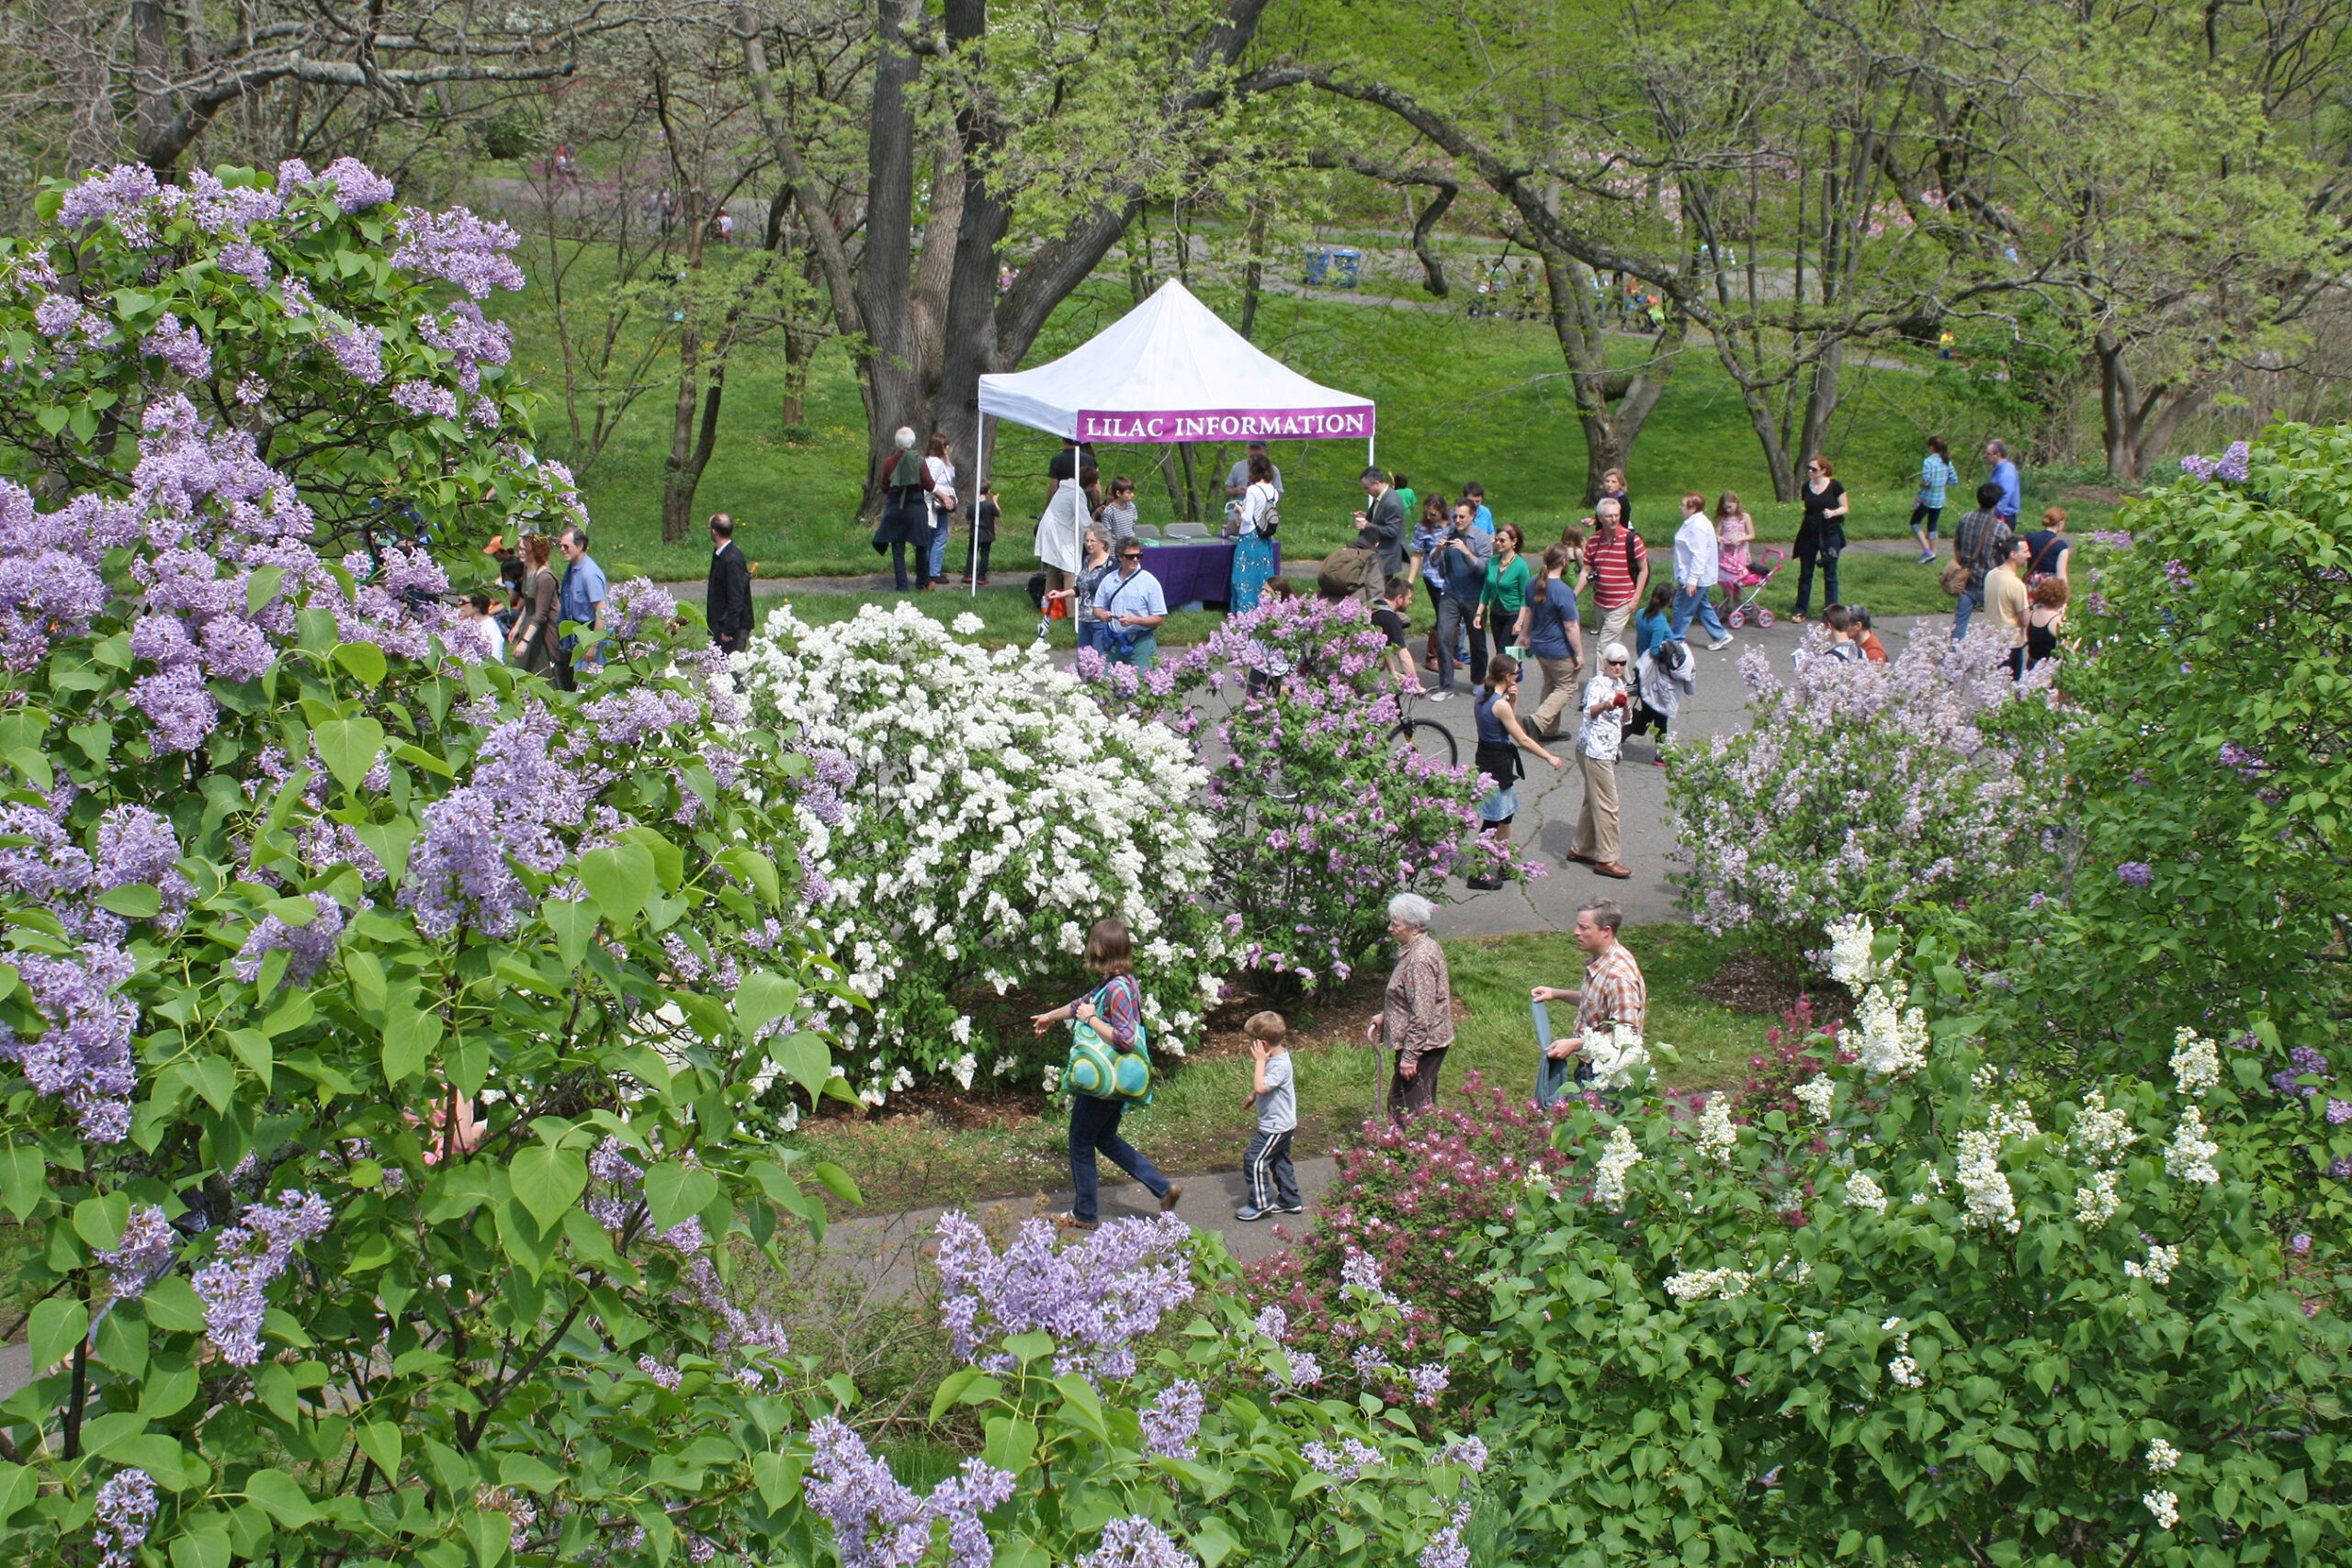 Lilac Sunday' Rouen Lilac - Arnold Arboretum